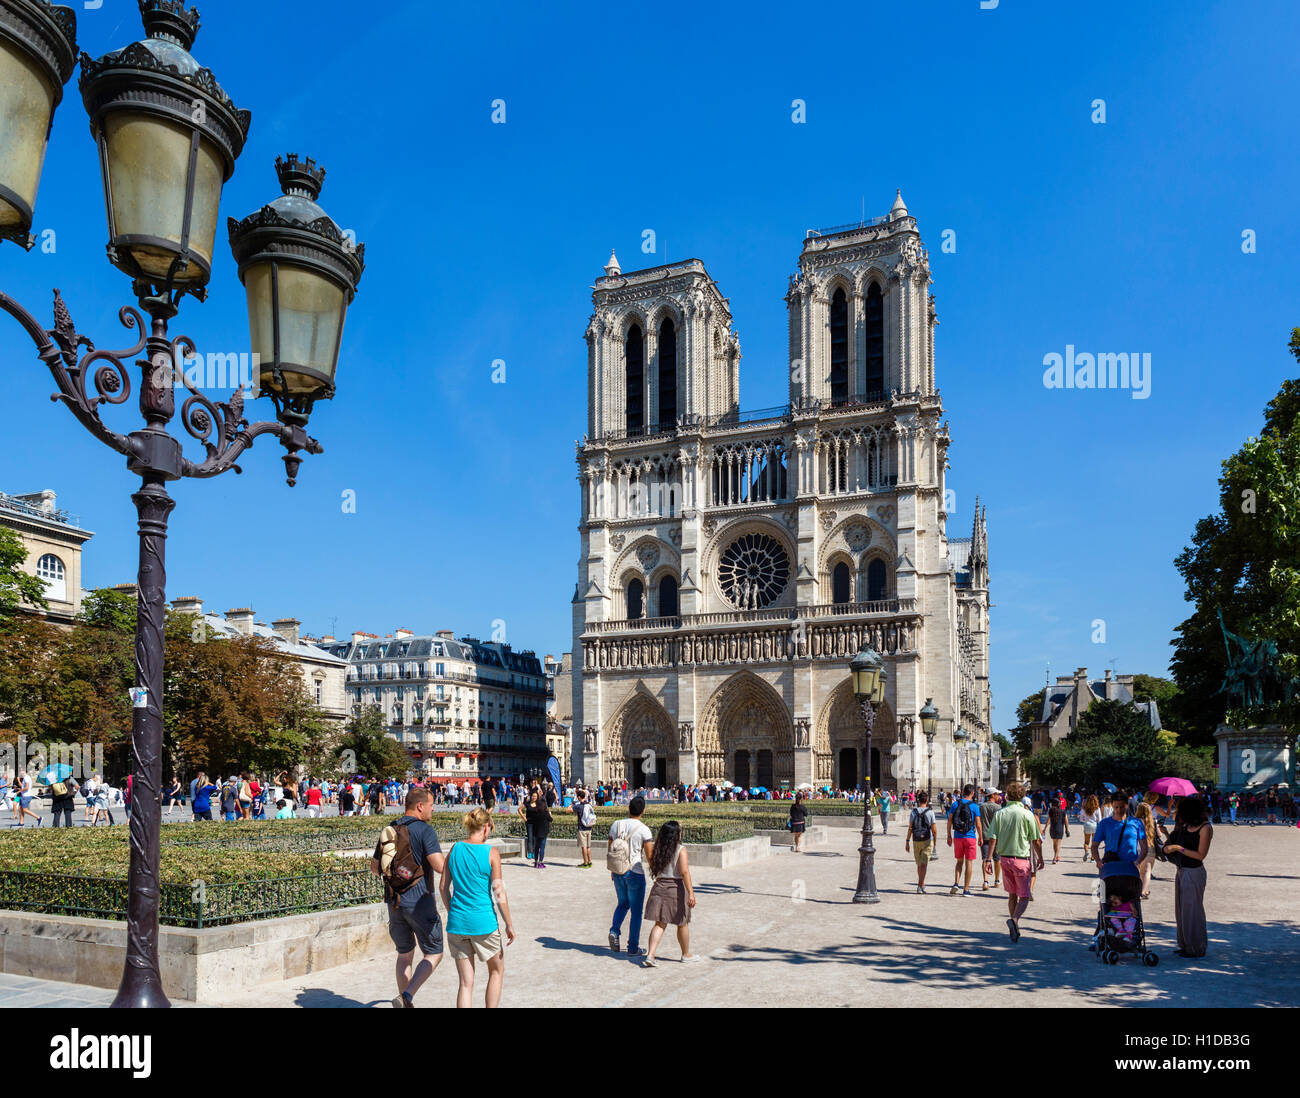 La cattedrale di Notre Dame di Parigi. Fronte ovest della cattedrale di Notre Dame (Notre Dame de Paris), Île de la Cité, Parigi, Francia Foto Stock